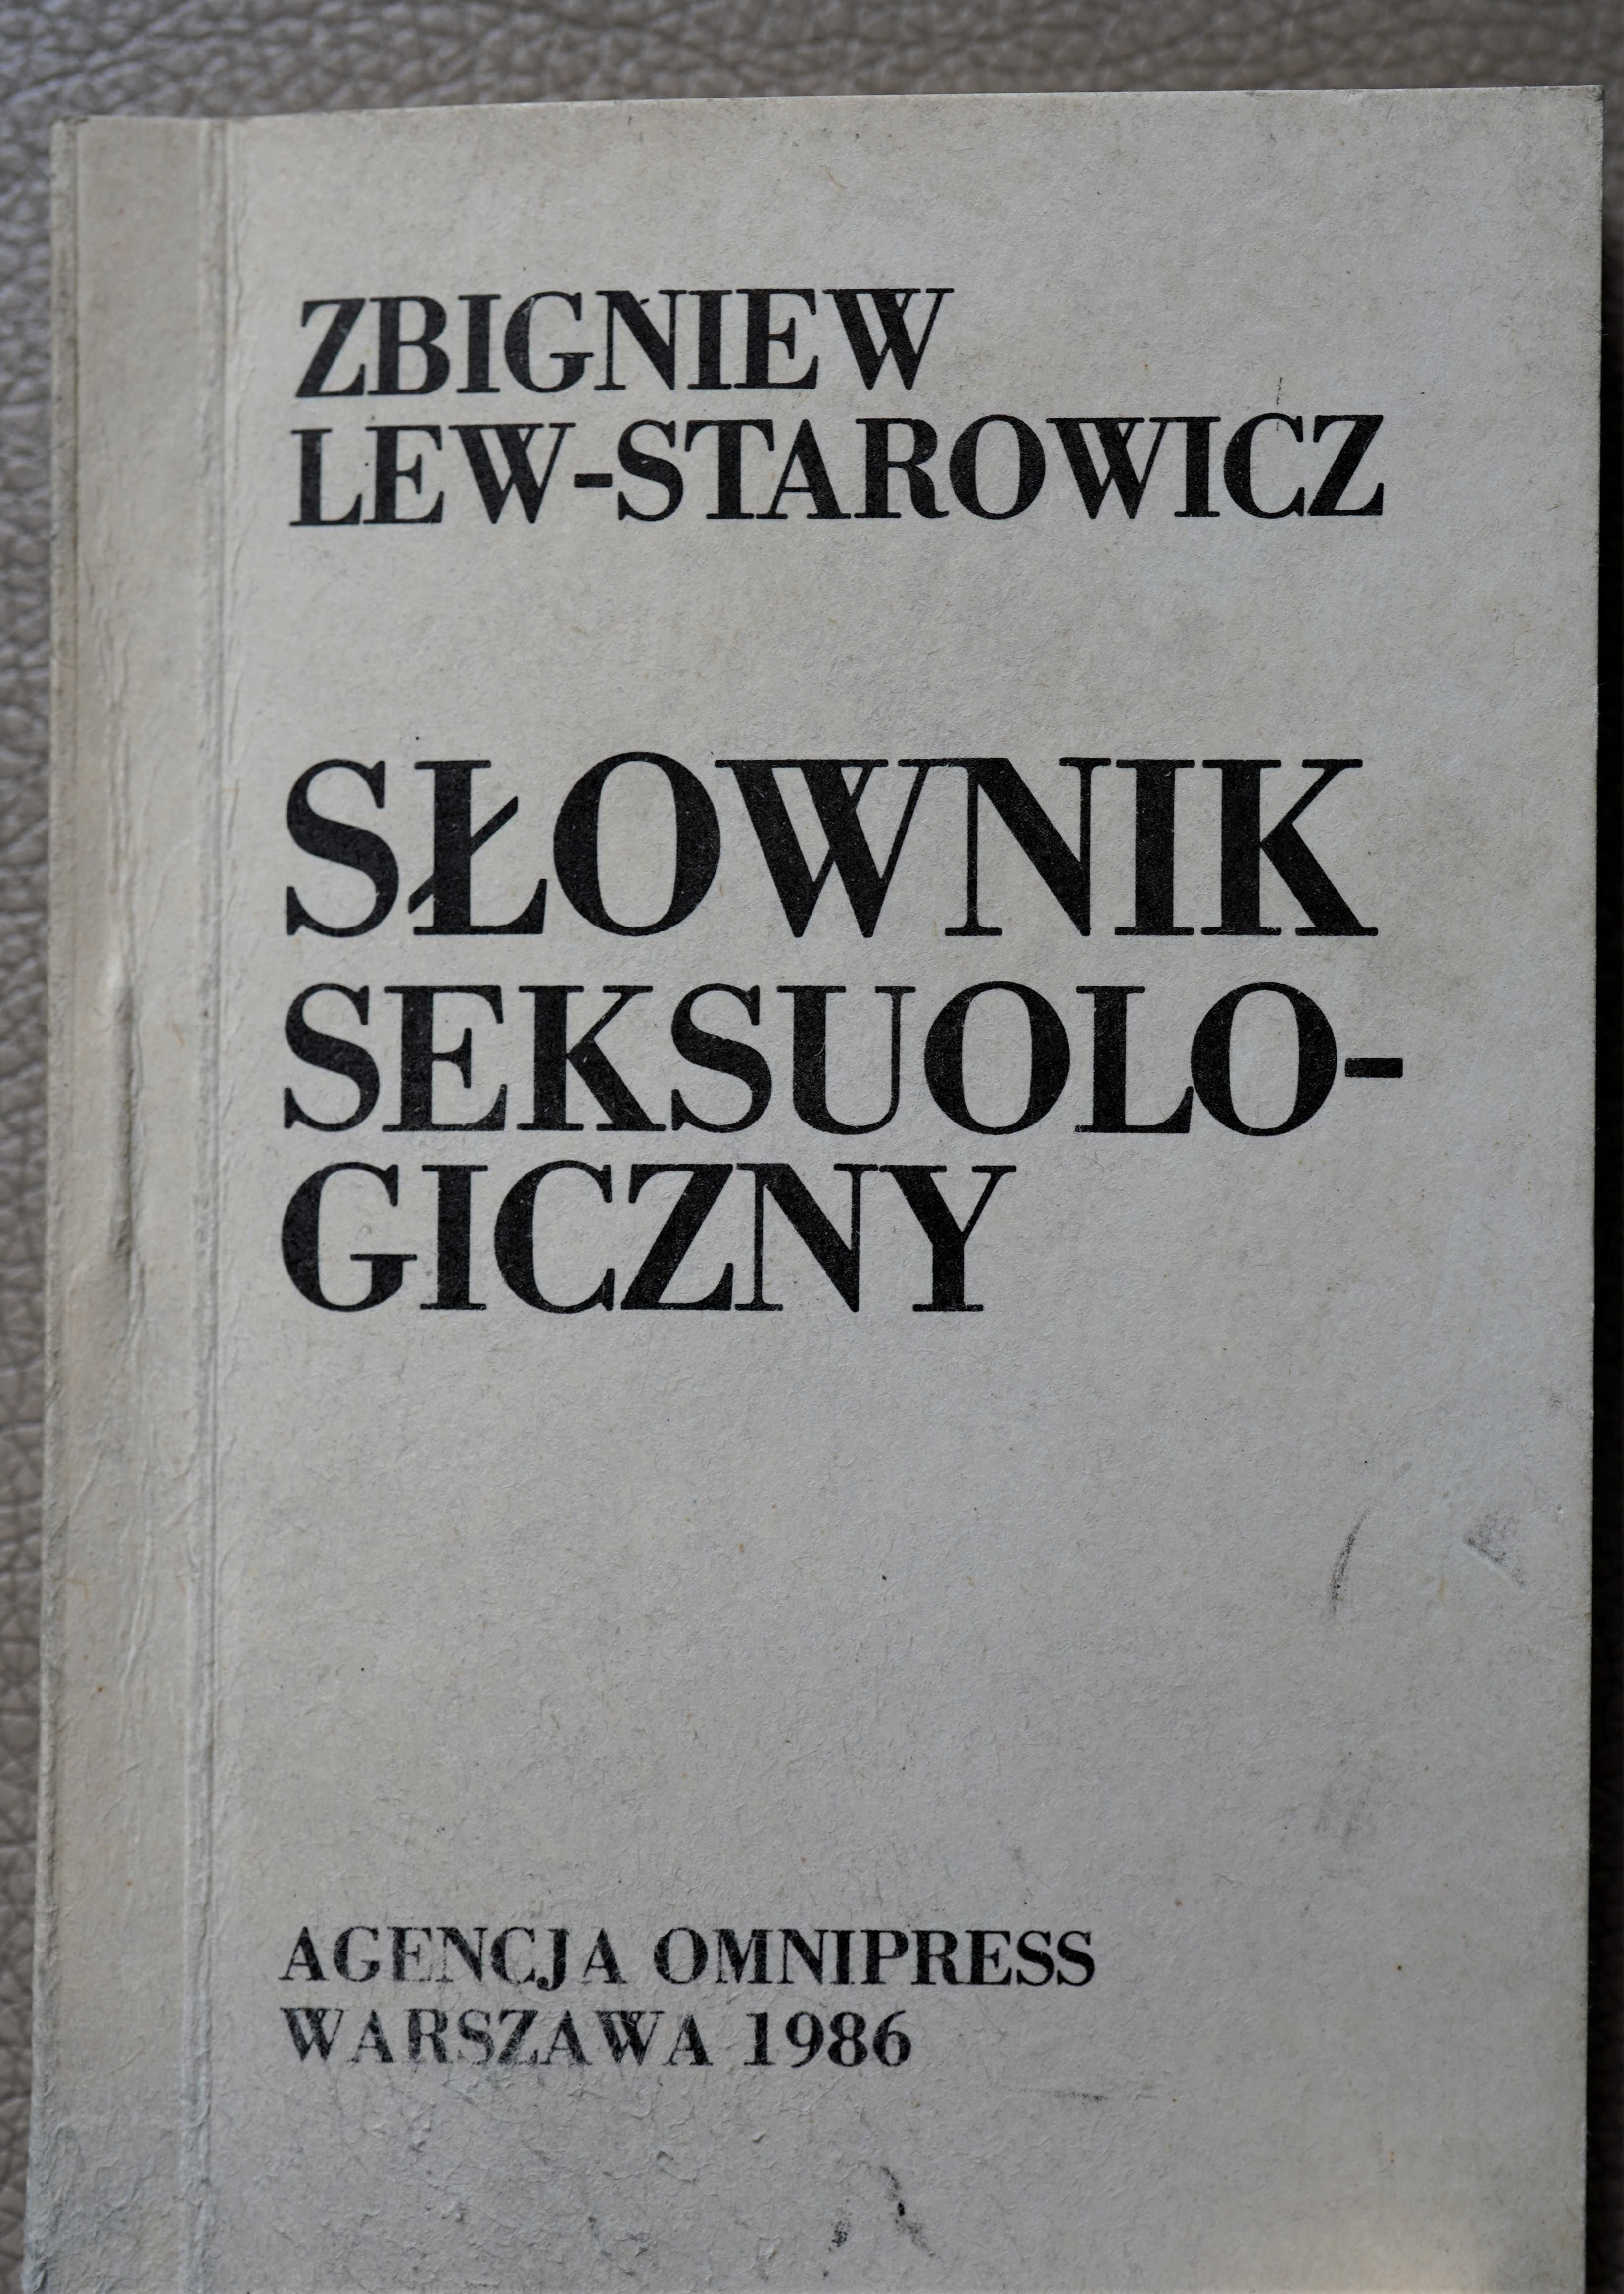 " Słownik seksuologiczny" Z. Lew-Starowicz  W-wa 1986 wyd. kieszonkowe